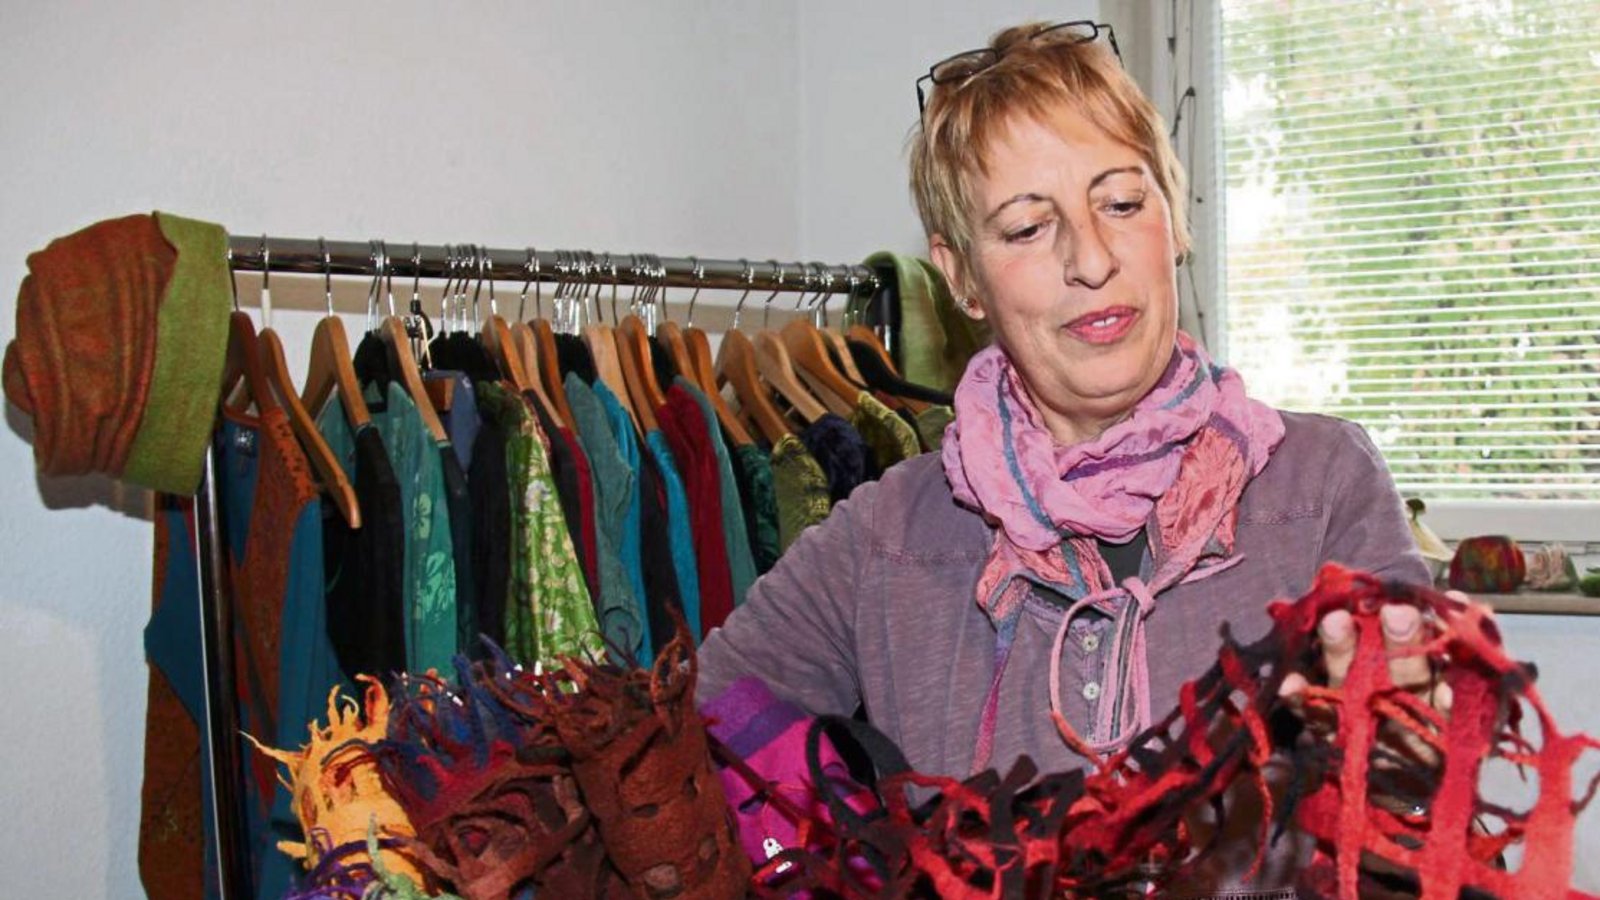 In ihrem Laden verkauft Birgit Bass selbstgefilzte Produkte. Darunter auch Schals. Fotos: Rostek